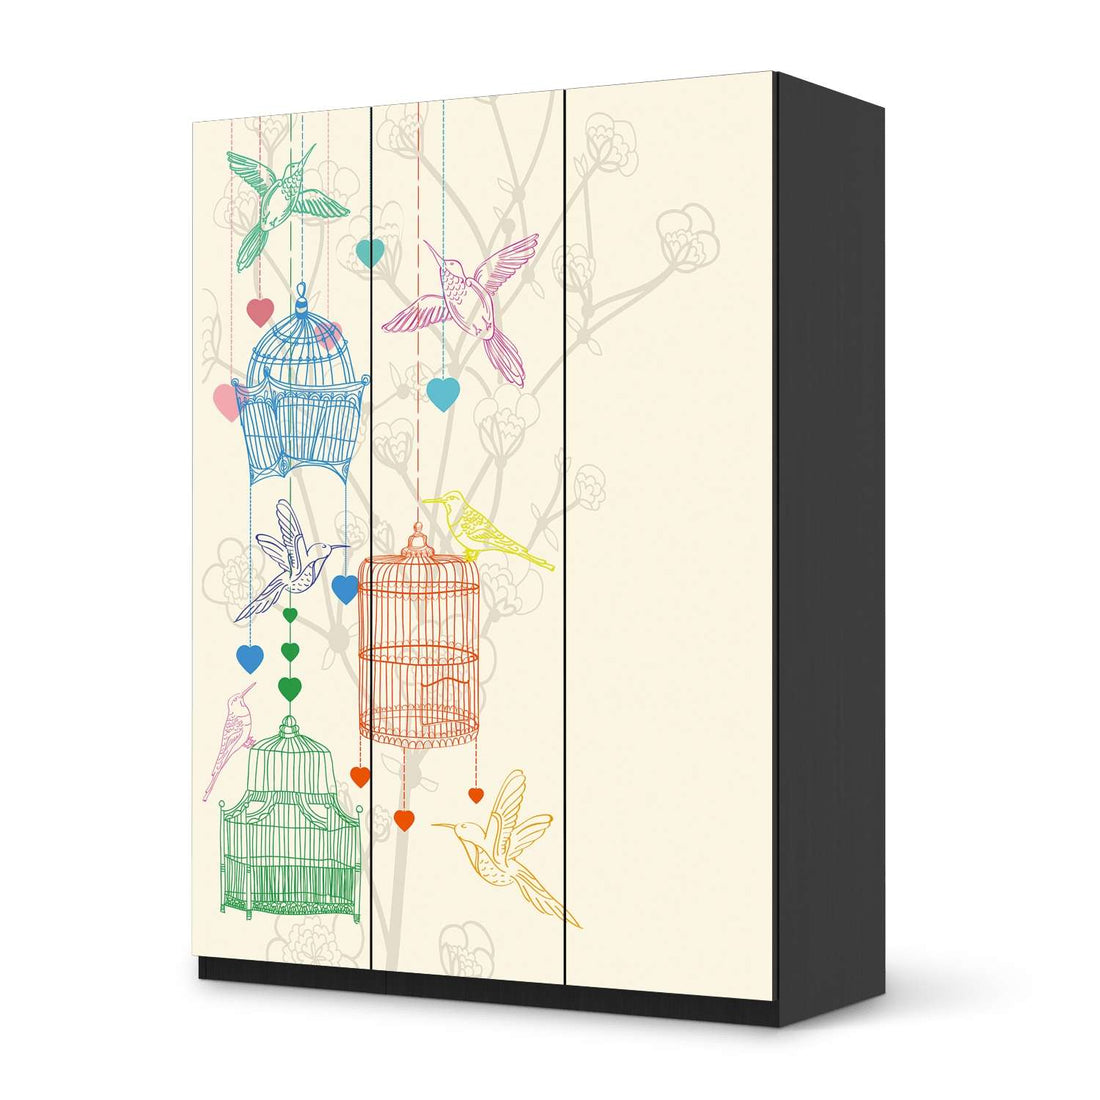 Folie für Möbel Birdcage - IKEA Pax Schrank 201 cm Höhe - 3 Türen - schwarz